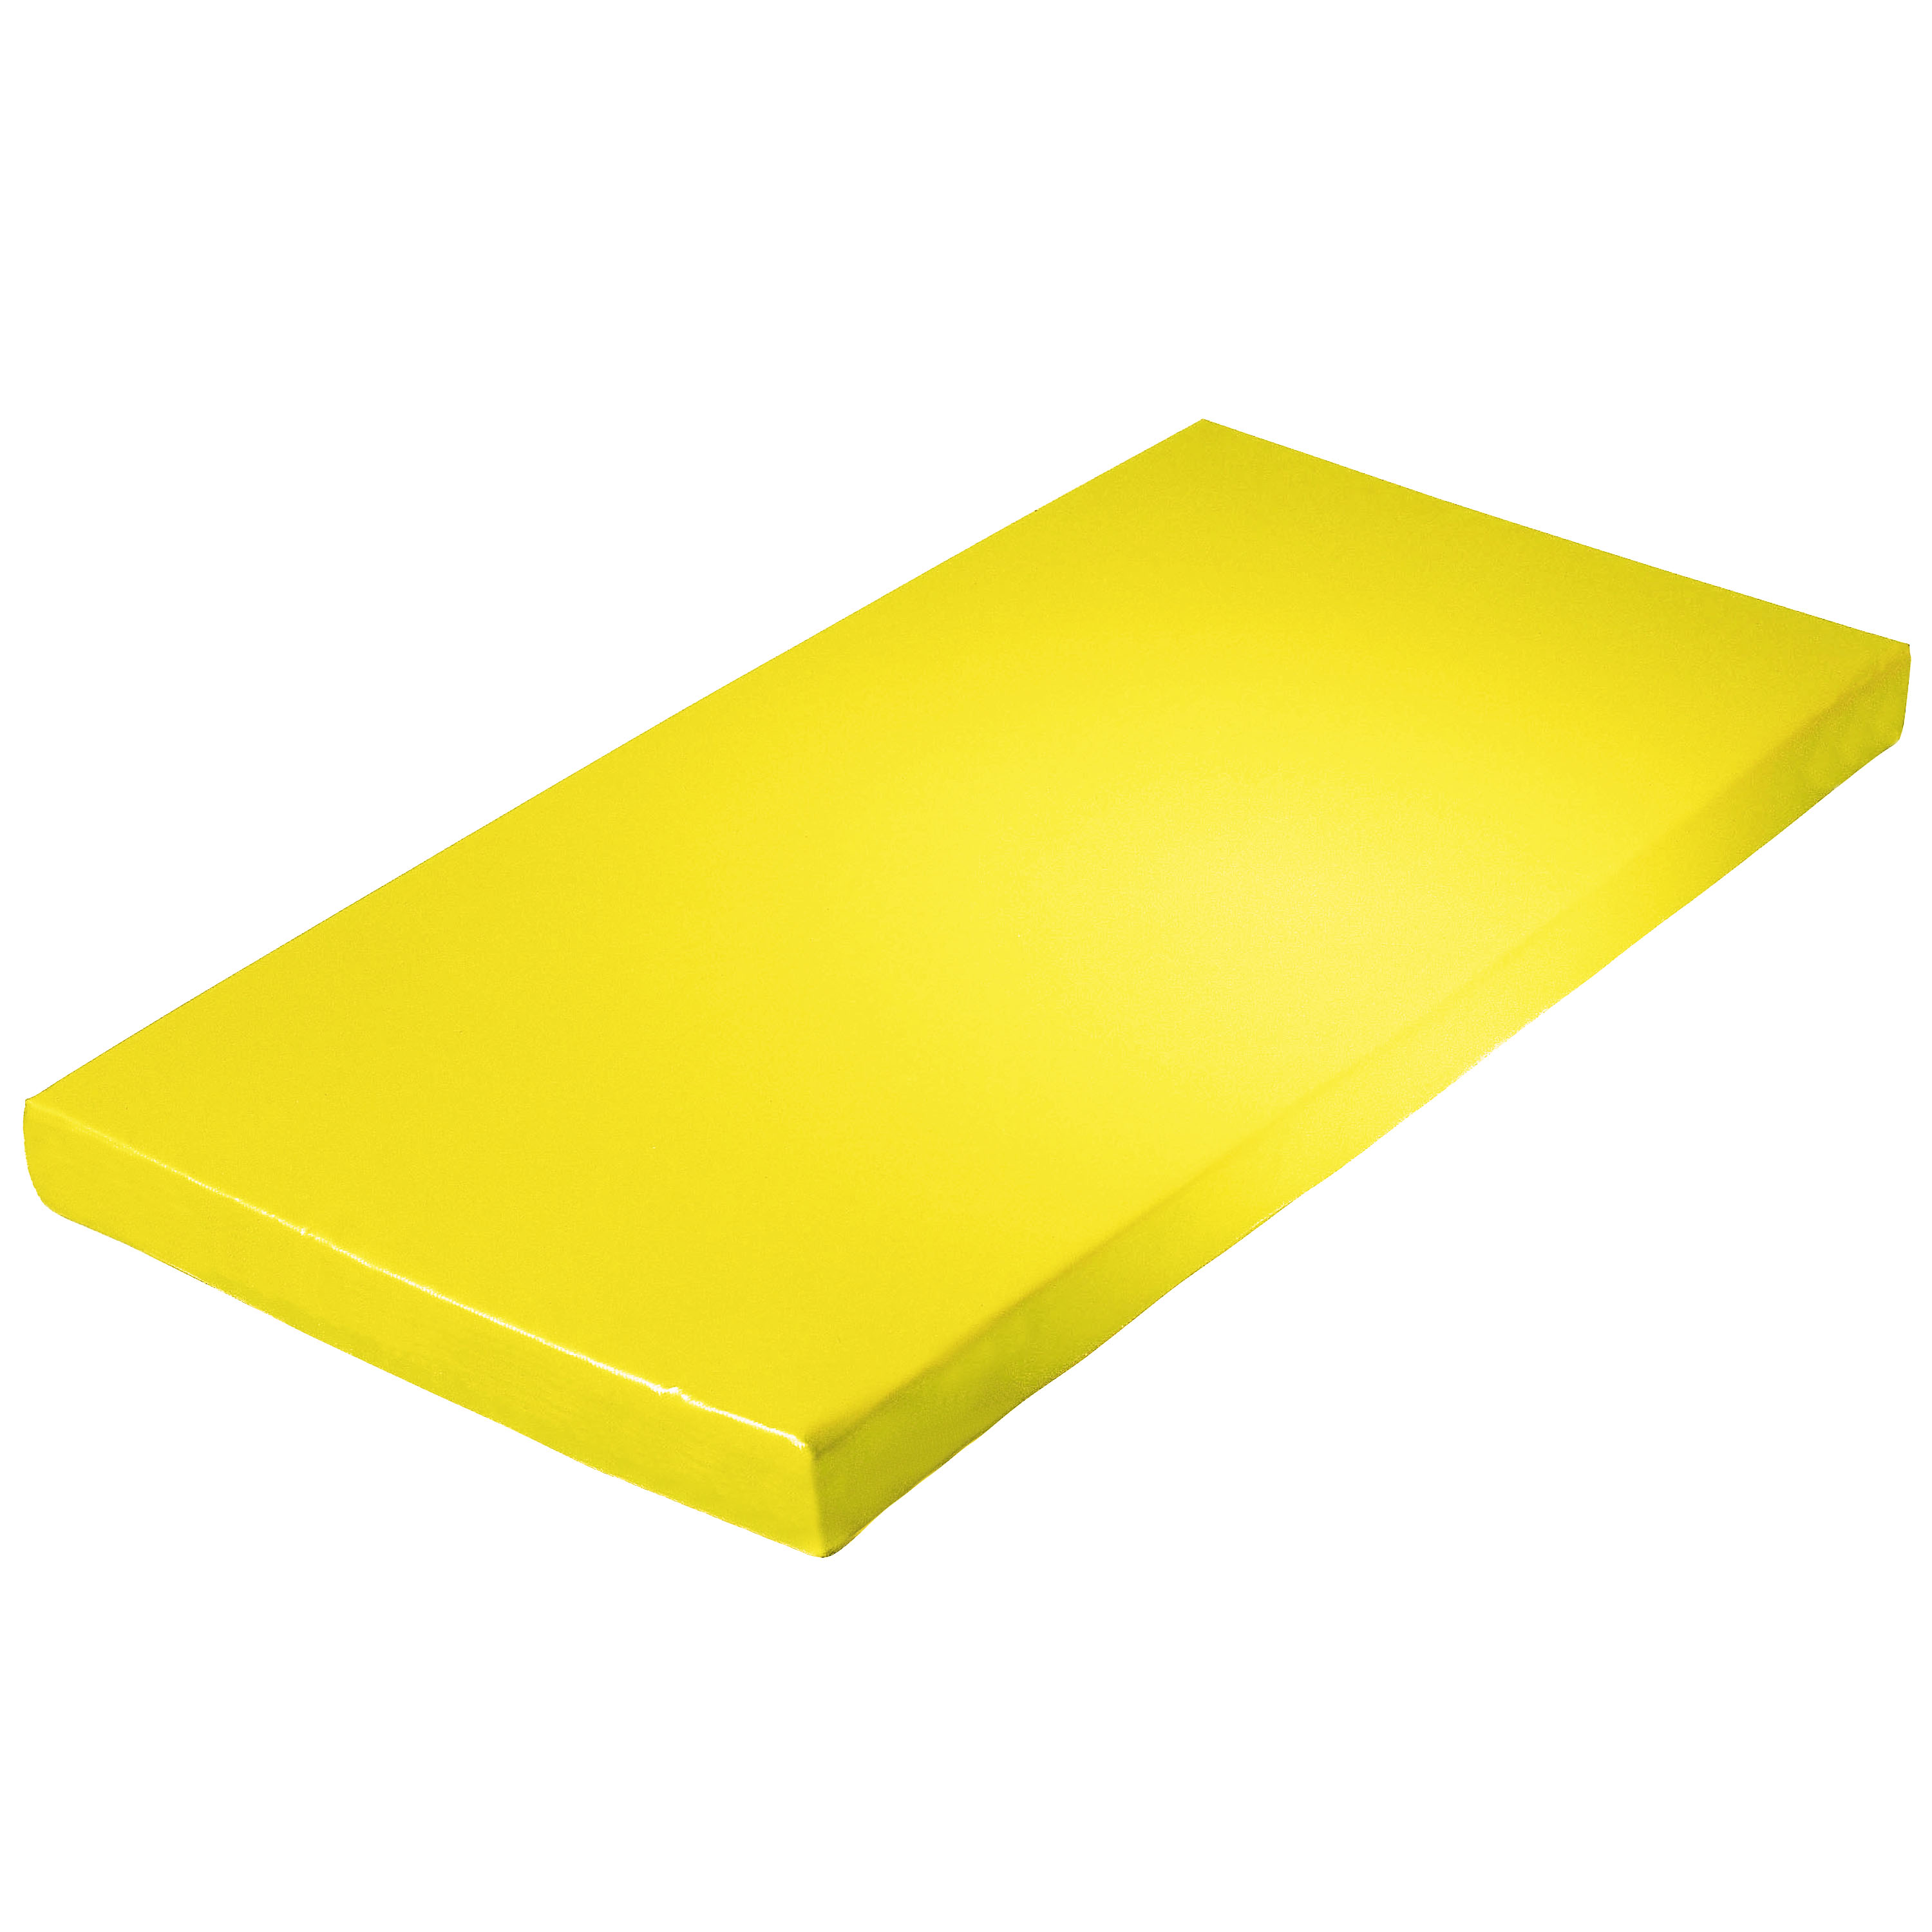 Super-Leichtturnmatte 200 x 100 x 8 cm, gelb